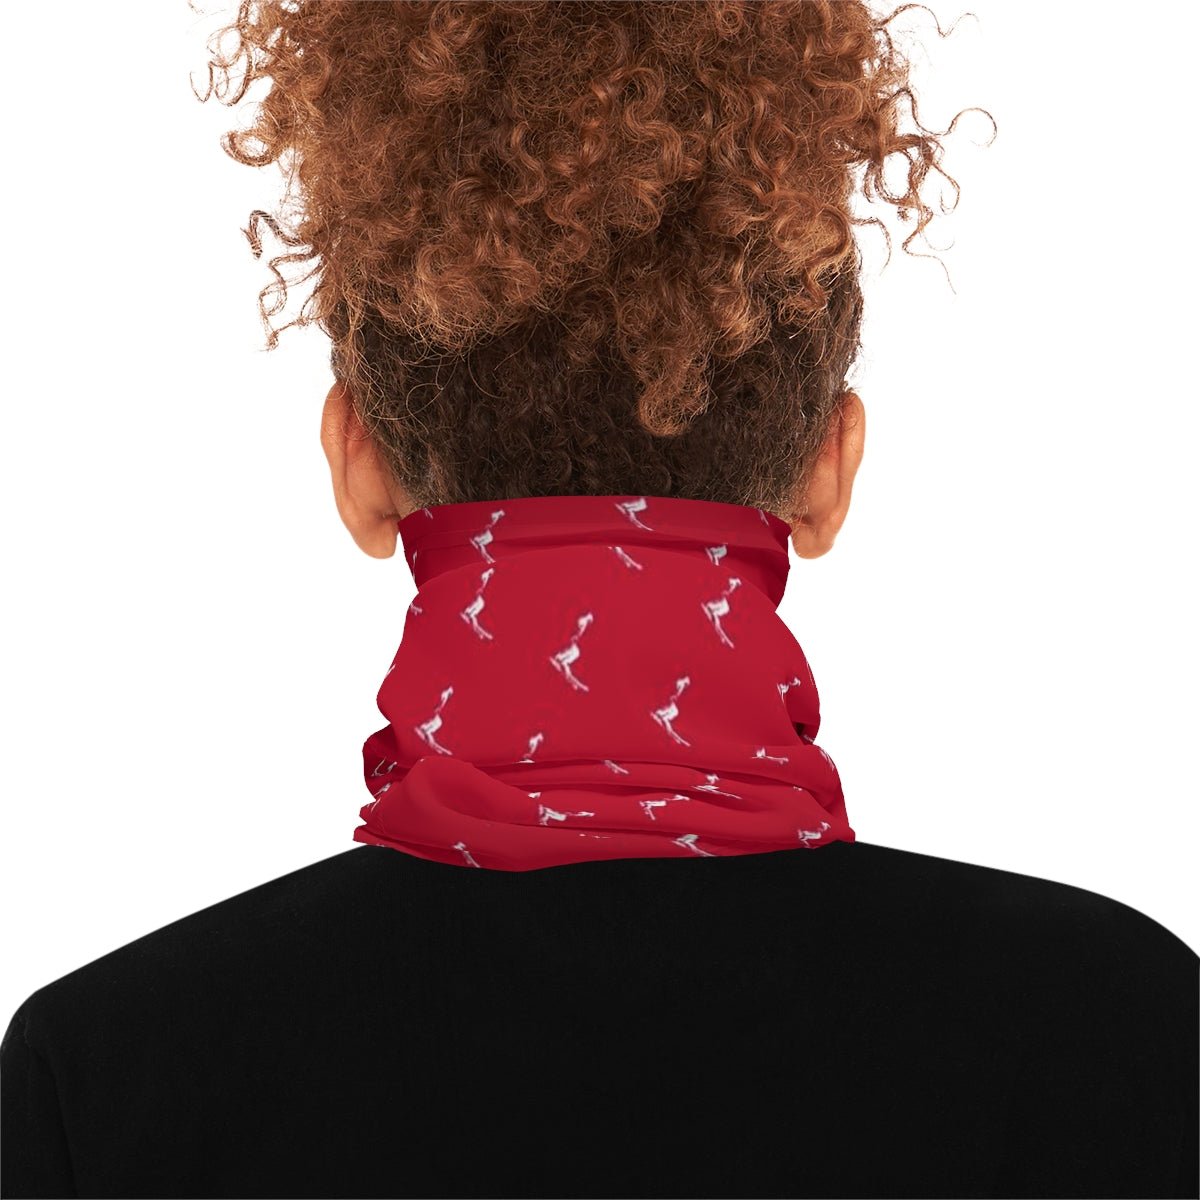 Neck Gaiter For Women Girls Men - Multi-Purpose - UPF 50+ UV Sun Protection -Face Cover Buff Bandana Head Cover Red Skier - Studio40ParkLane